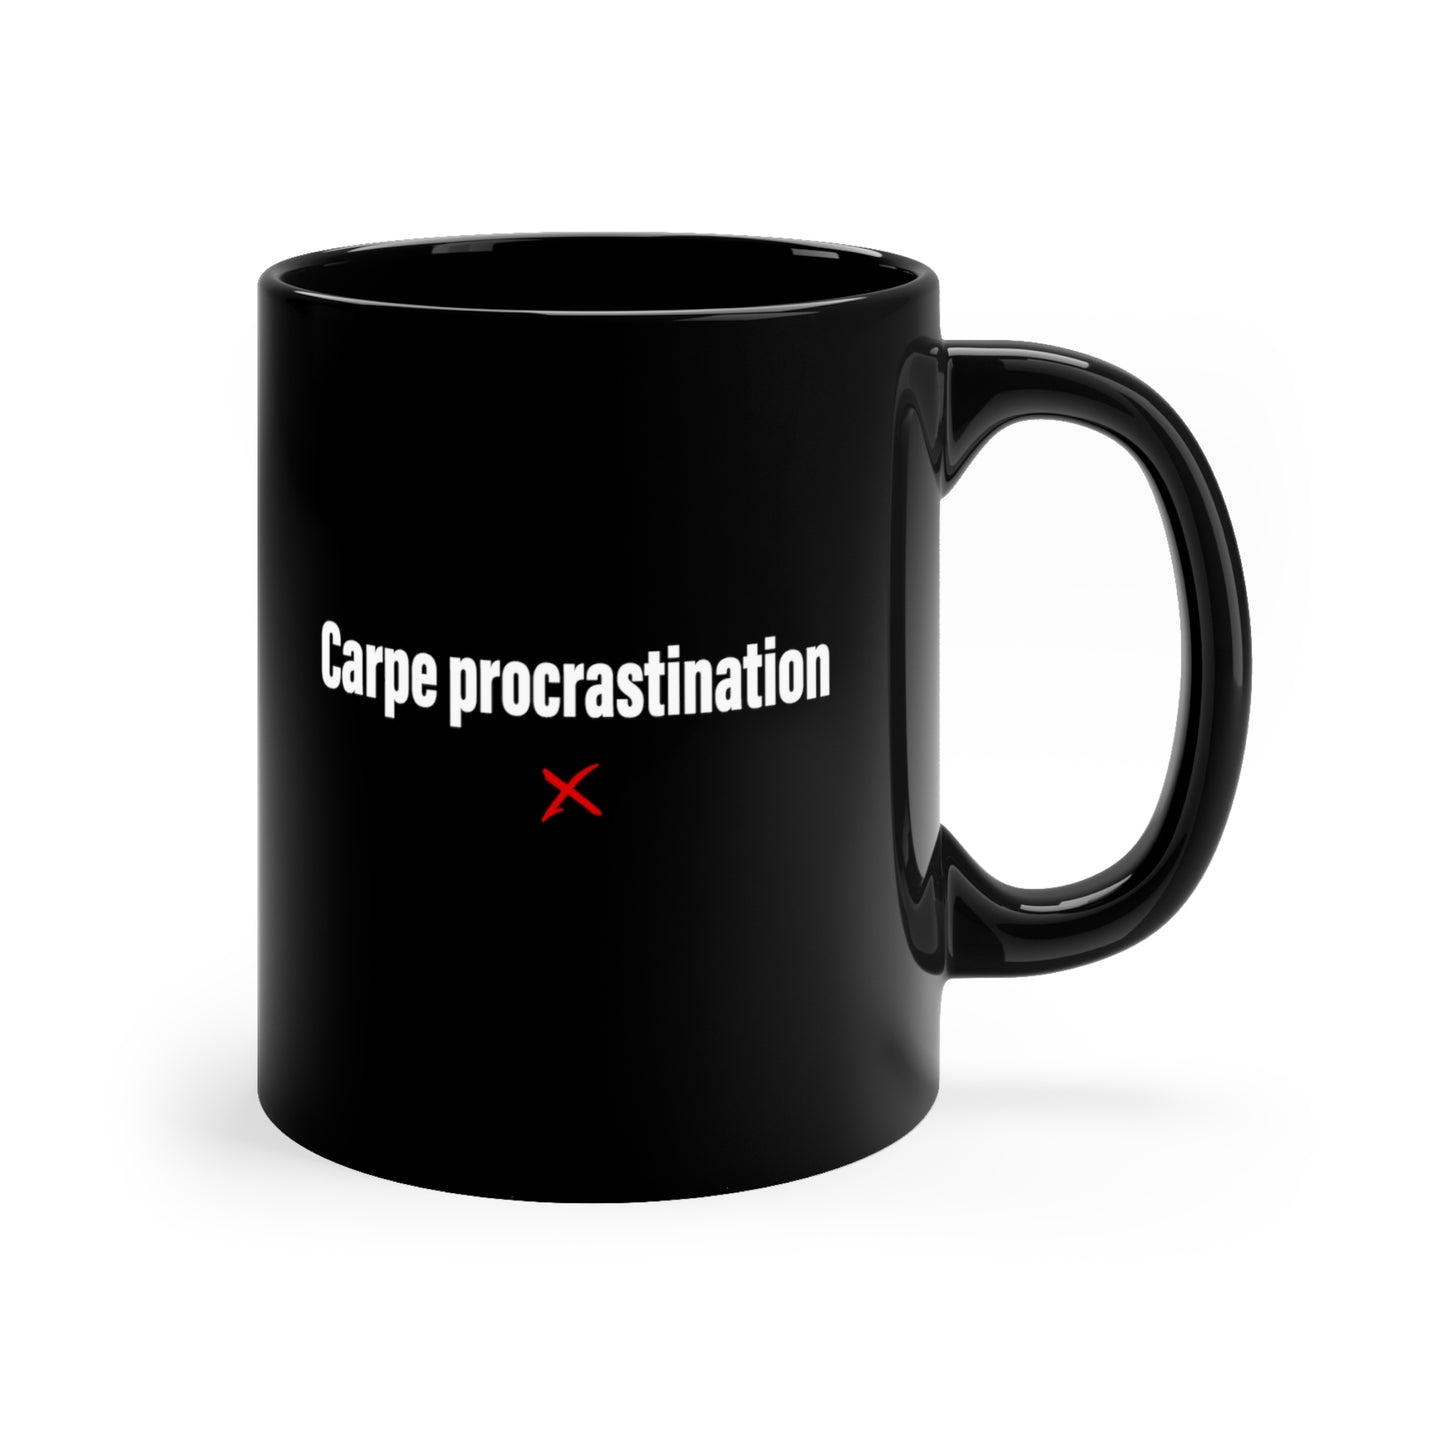 Carpe procrastination - Mug